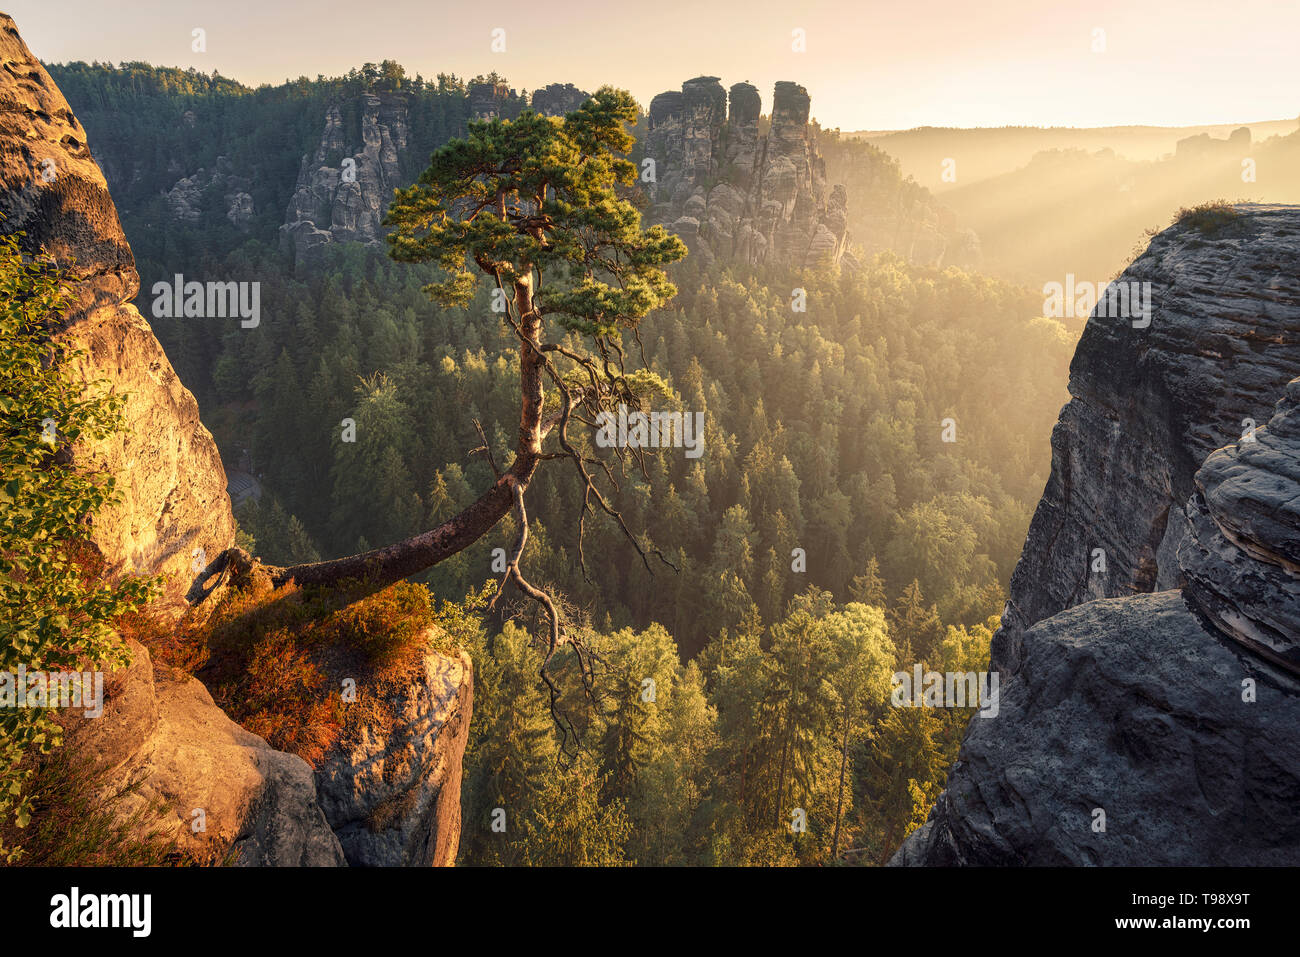 Le célèbre arbre de pin à Bastei dans la Suisse saxonne d'une lumière dorée, des montagnes de grès de l'Elbe, District Lohmen, Saxe, Allemagne Banque D'Images